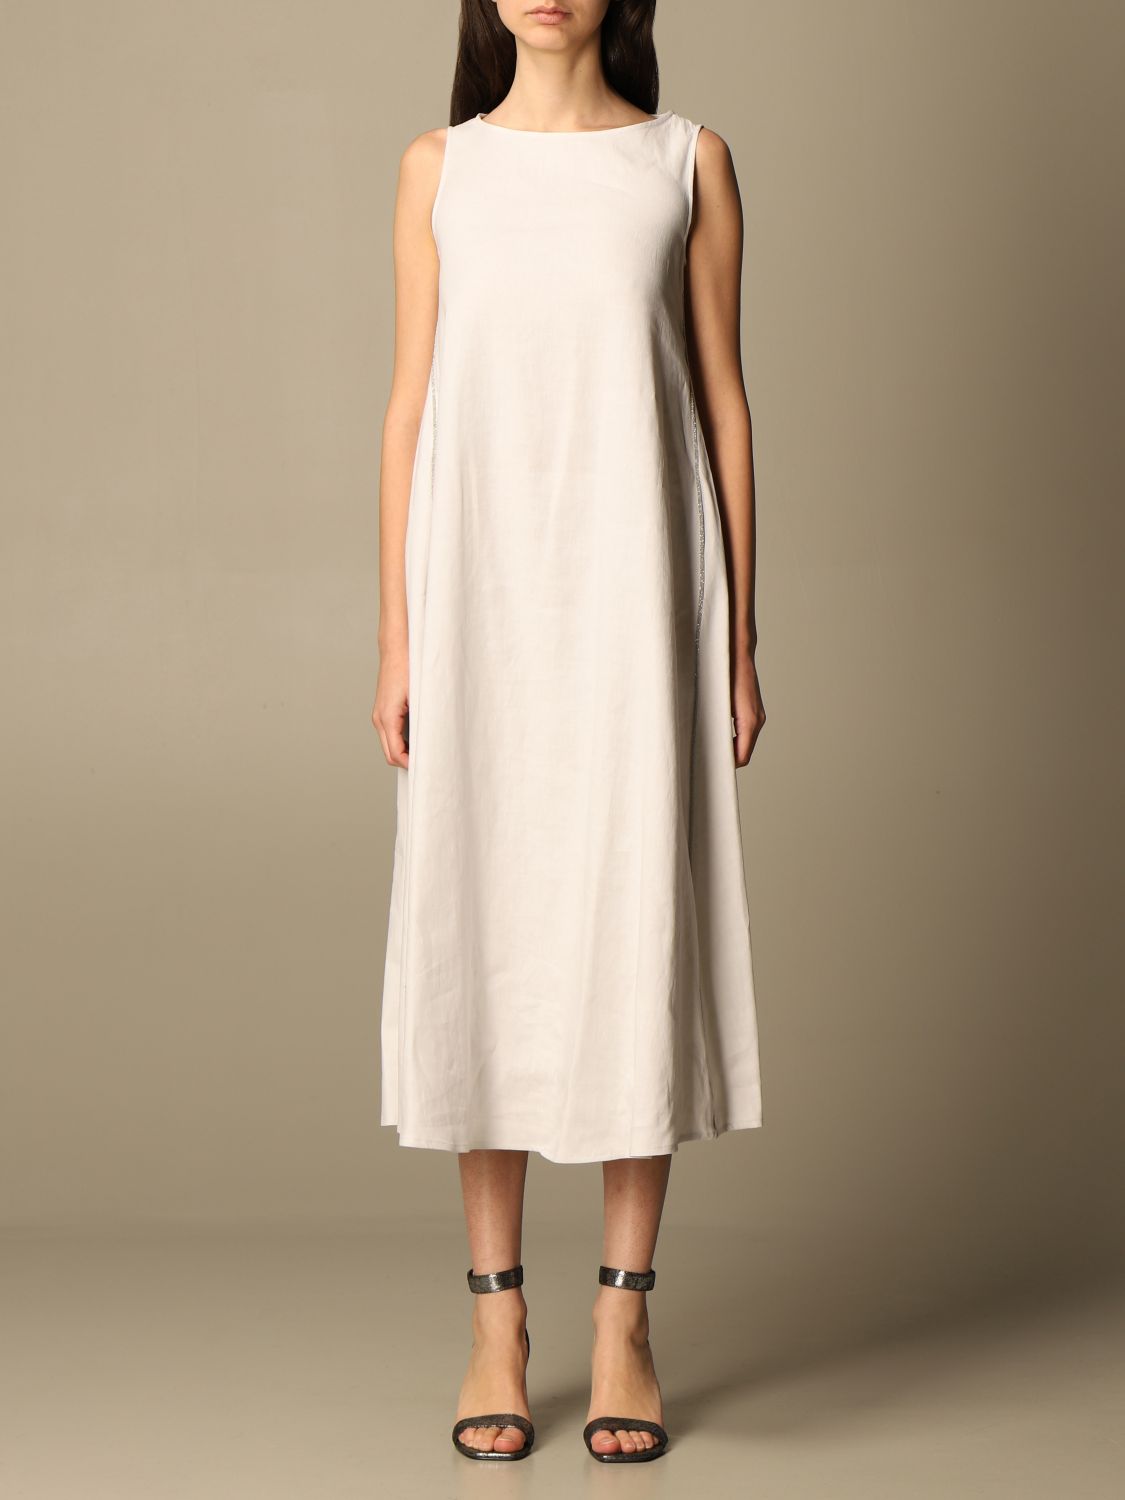 Buy > off the shoulder formal dresses short > in stock